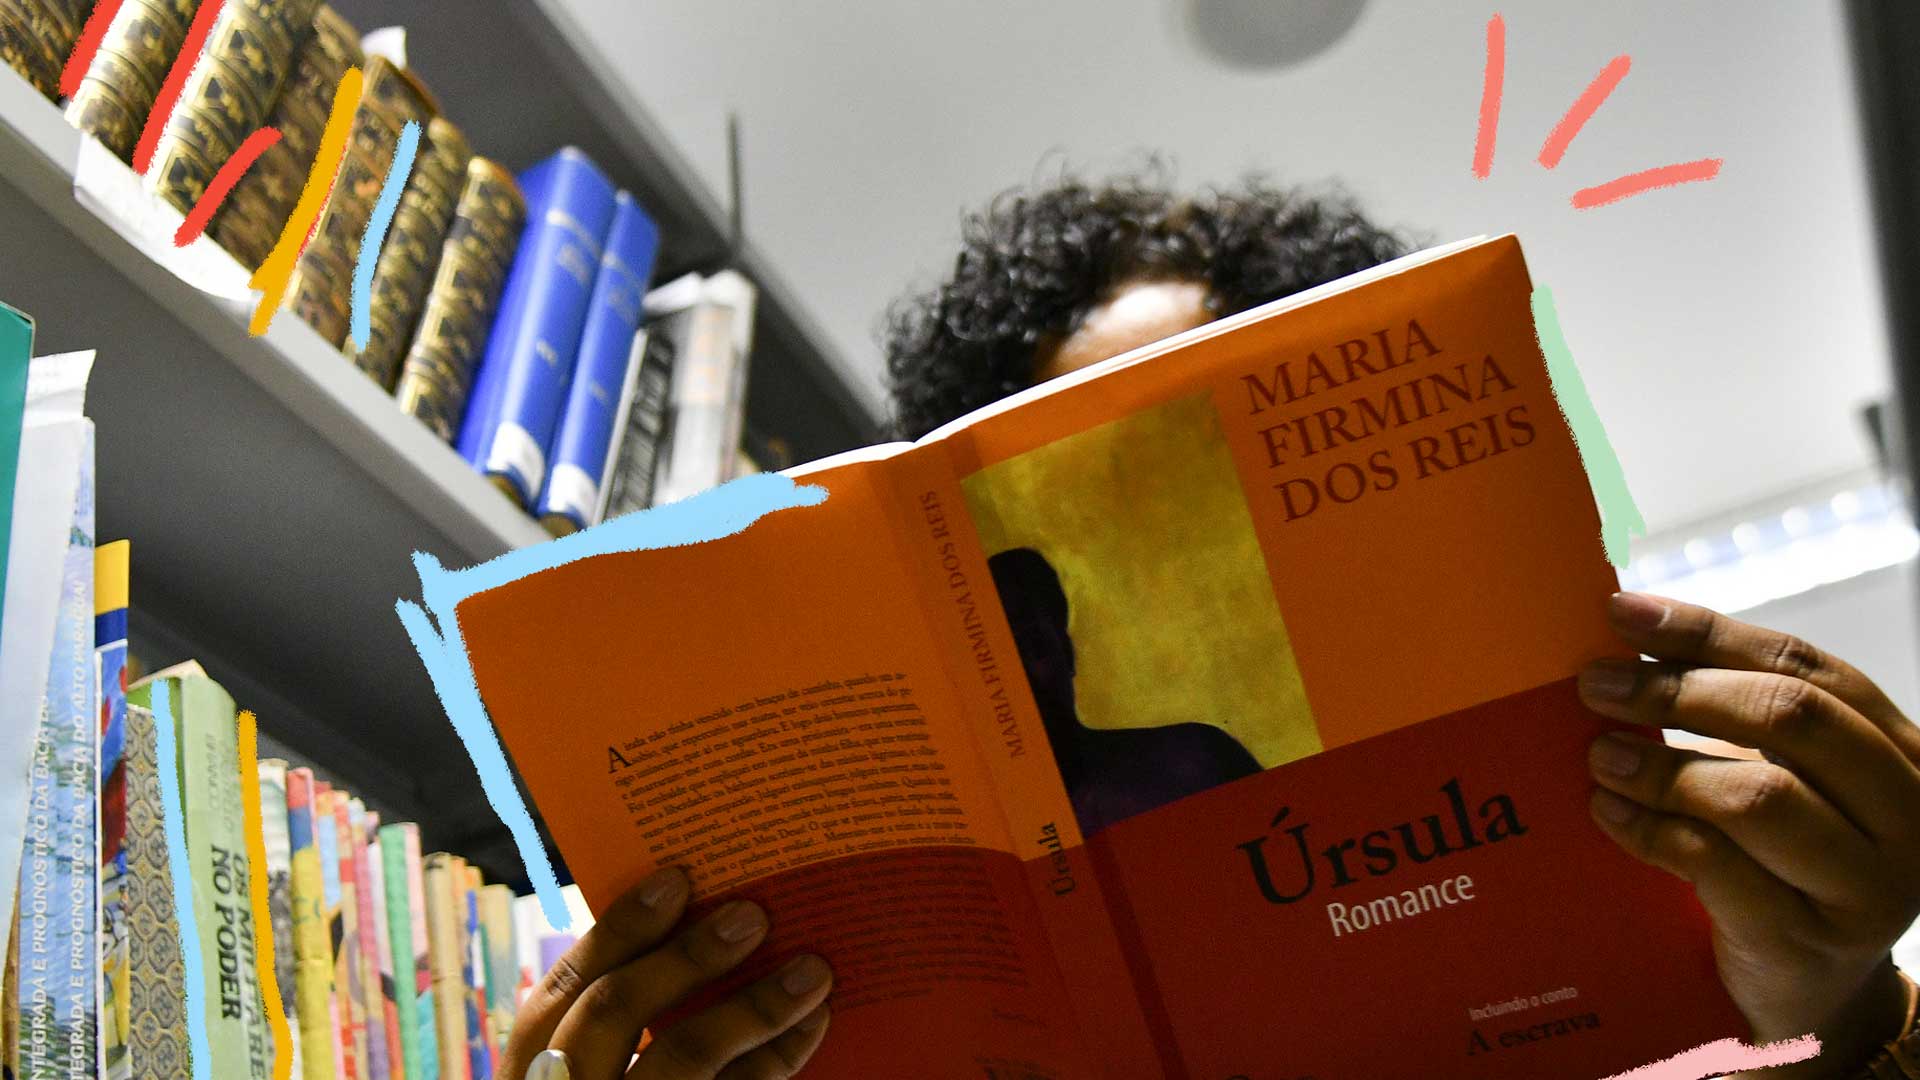 Foto de uma mulher lendo o livro de “Maria Firmina dos Reis”, Úrsula. Na imagem aparece uma biblioteca e a mão de uma mulher segurando o livro.